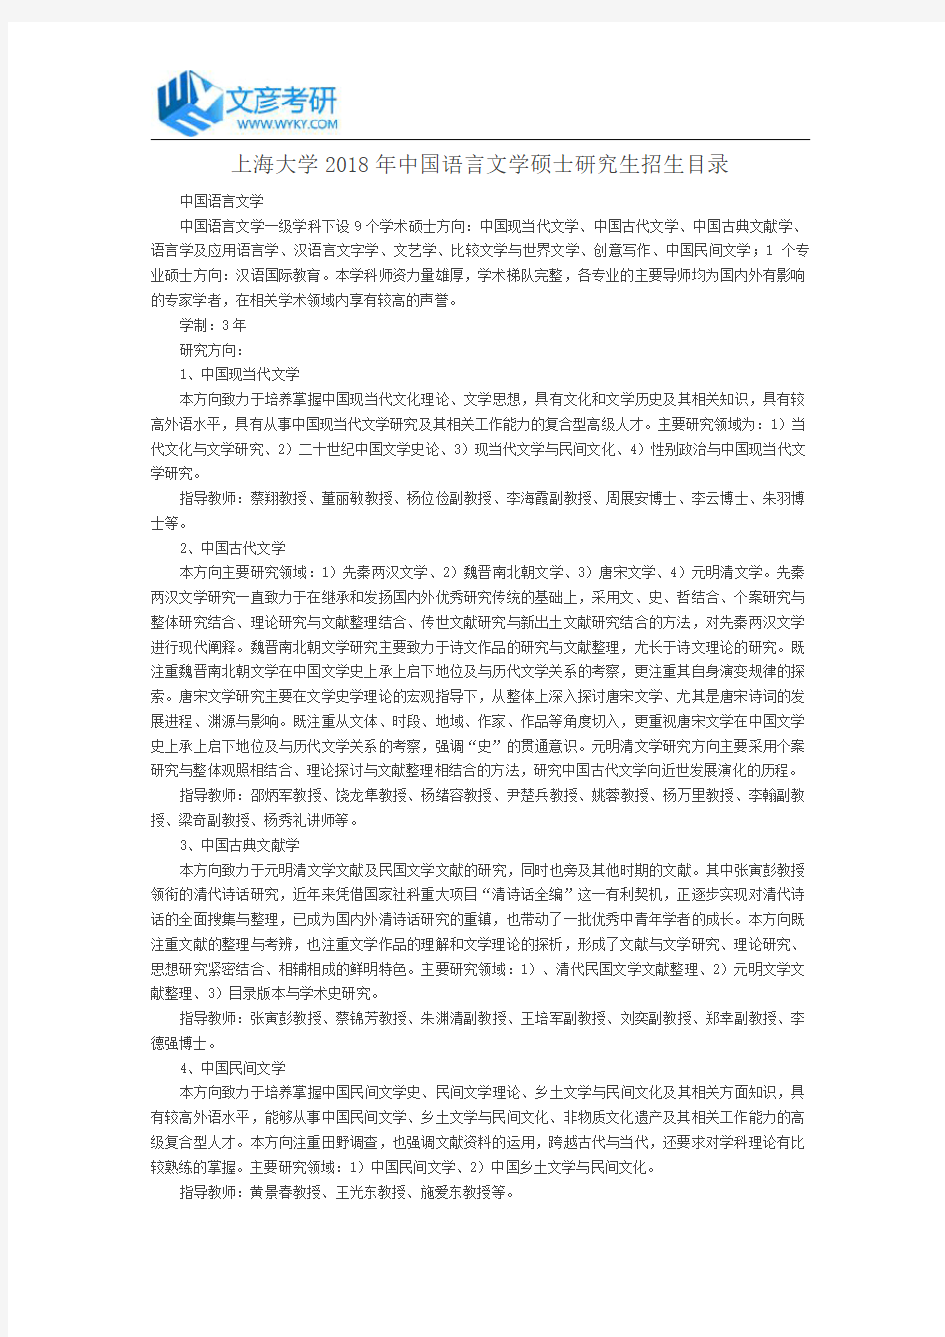 上海大学2018年中国语言文学硕士研究生招生目录_上海大学考研网